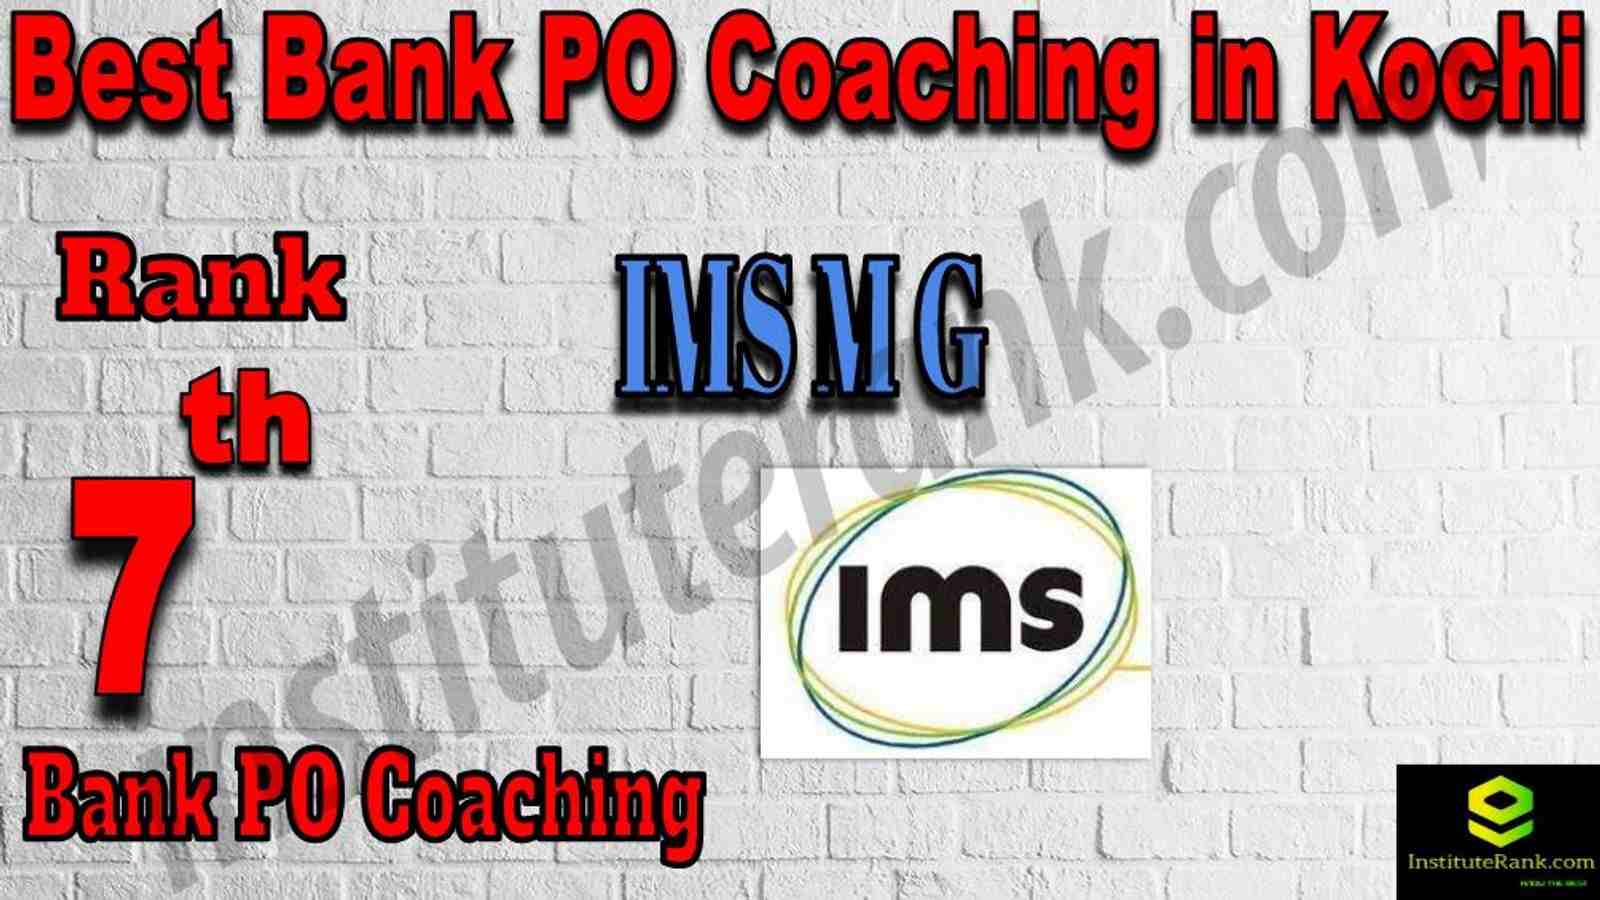 7th Best Bank PO Coaching in Kochi